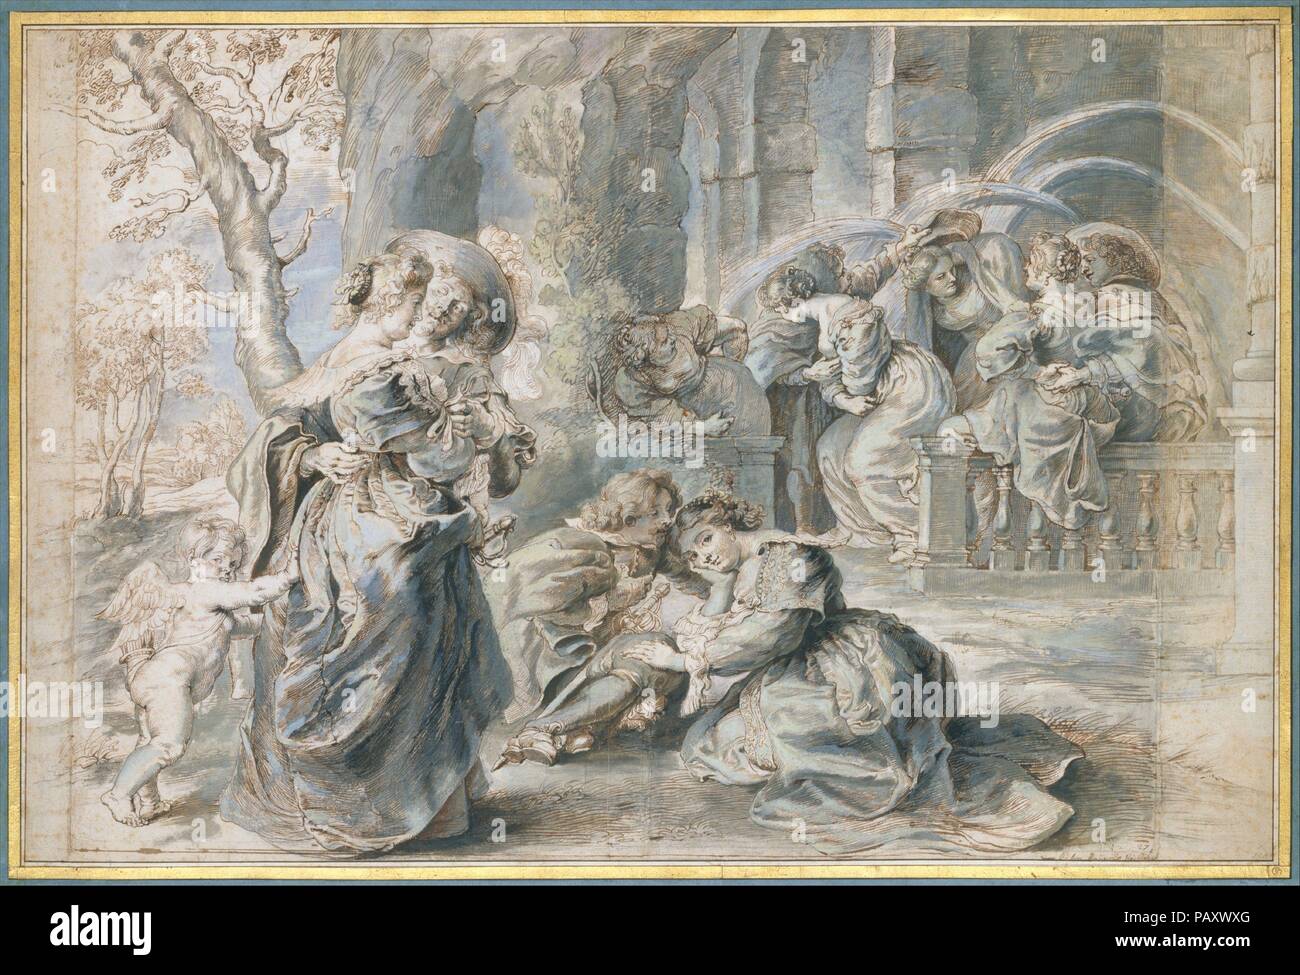 El jardín del amor (parte izquierda). Artista: Peter Paul Rubens (Siegen, Flamenca Amberes 1577-1640); Taller de Peter Paul Rubens (1577-1640, Siegen Flamenca Amberes). Dimensiones: 18 1/4 x 27 3/4 pulg. (46,3 x 70,5 cm) (incluidas las tiras añadidas a la izquierda y a la derecha). Fecha: ca. 1633-35. Rubens supervisó los grabadores que reproducen sus pinturas a lo largo de su carrera. Sólo a principios de la década de 1630 hizo girar para xilografías, en estrecha colaboración con Christoffel Jegher. Estos monumentales dibujos son modelos basados en una composición también conocida de la pintura de Rubens en el Museo del Prado, Madrid. Se hicieron Foto de stock